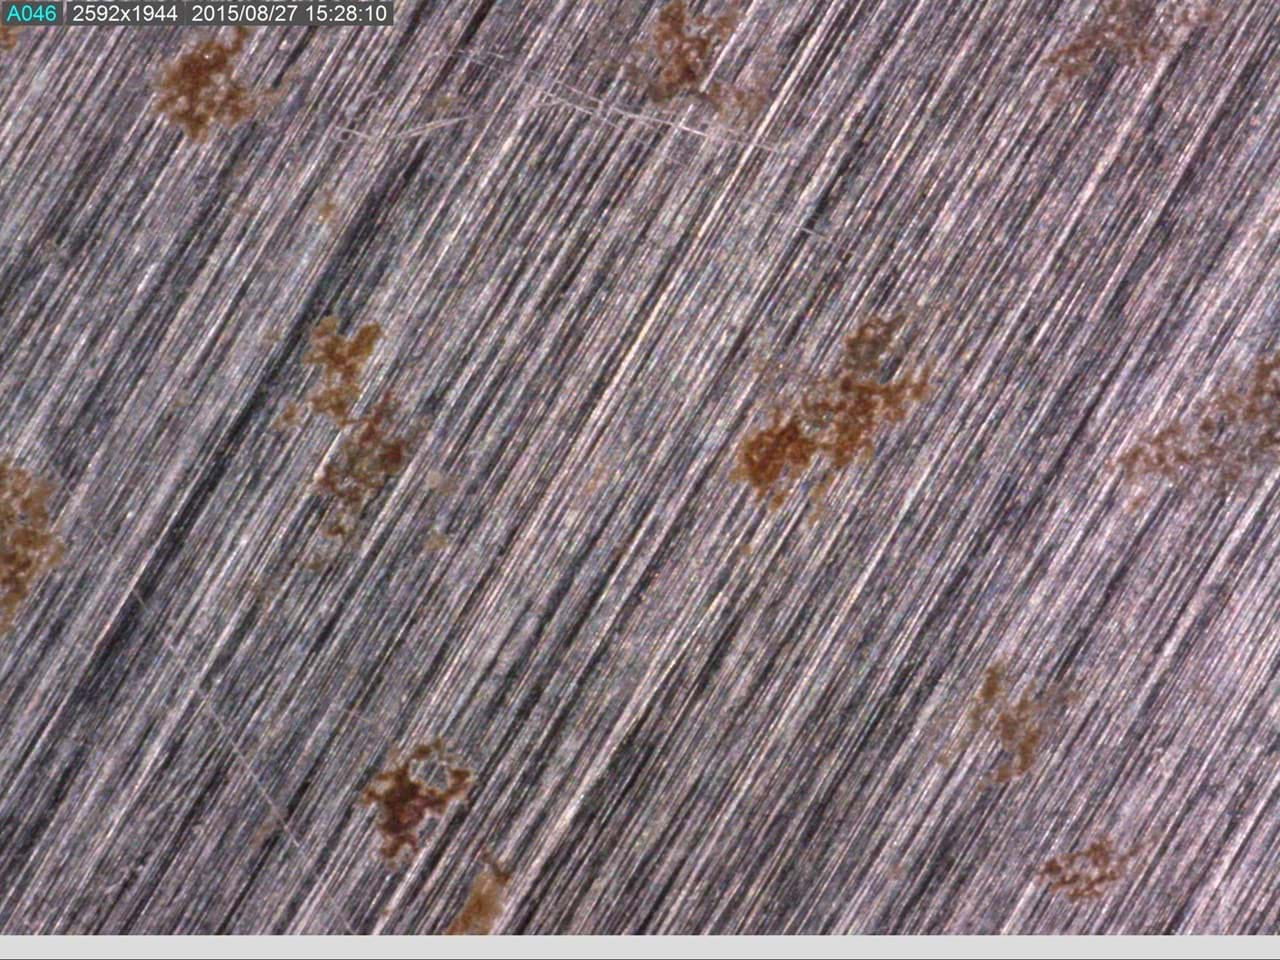 Eisen unter dem Mikroskop, mit einigen Rostflecken. Ein Beispiel für das was man mit einem Dino-Lite Mikroskop machen kann.